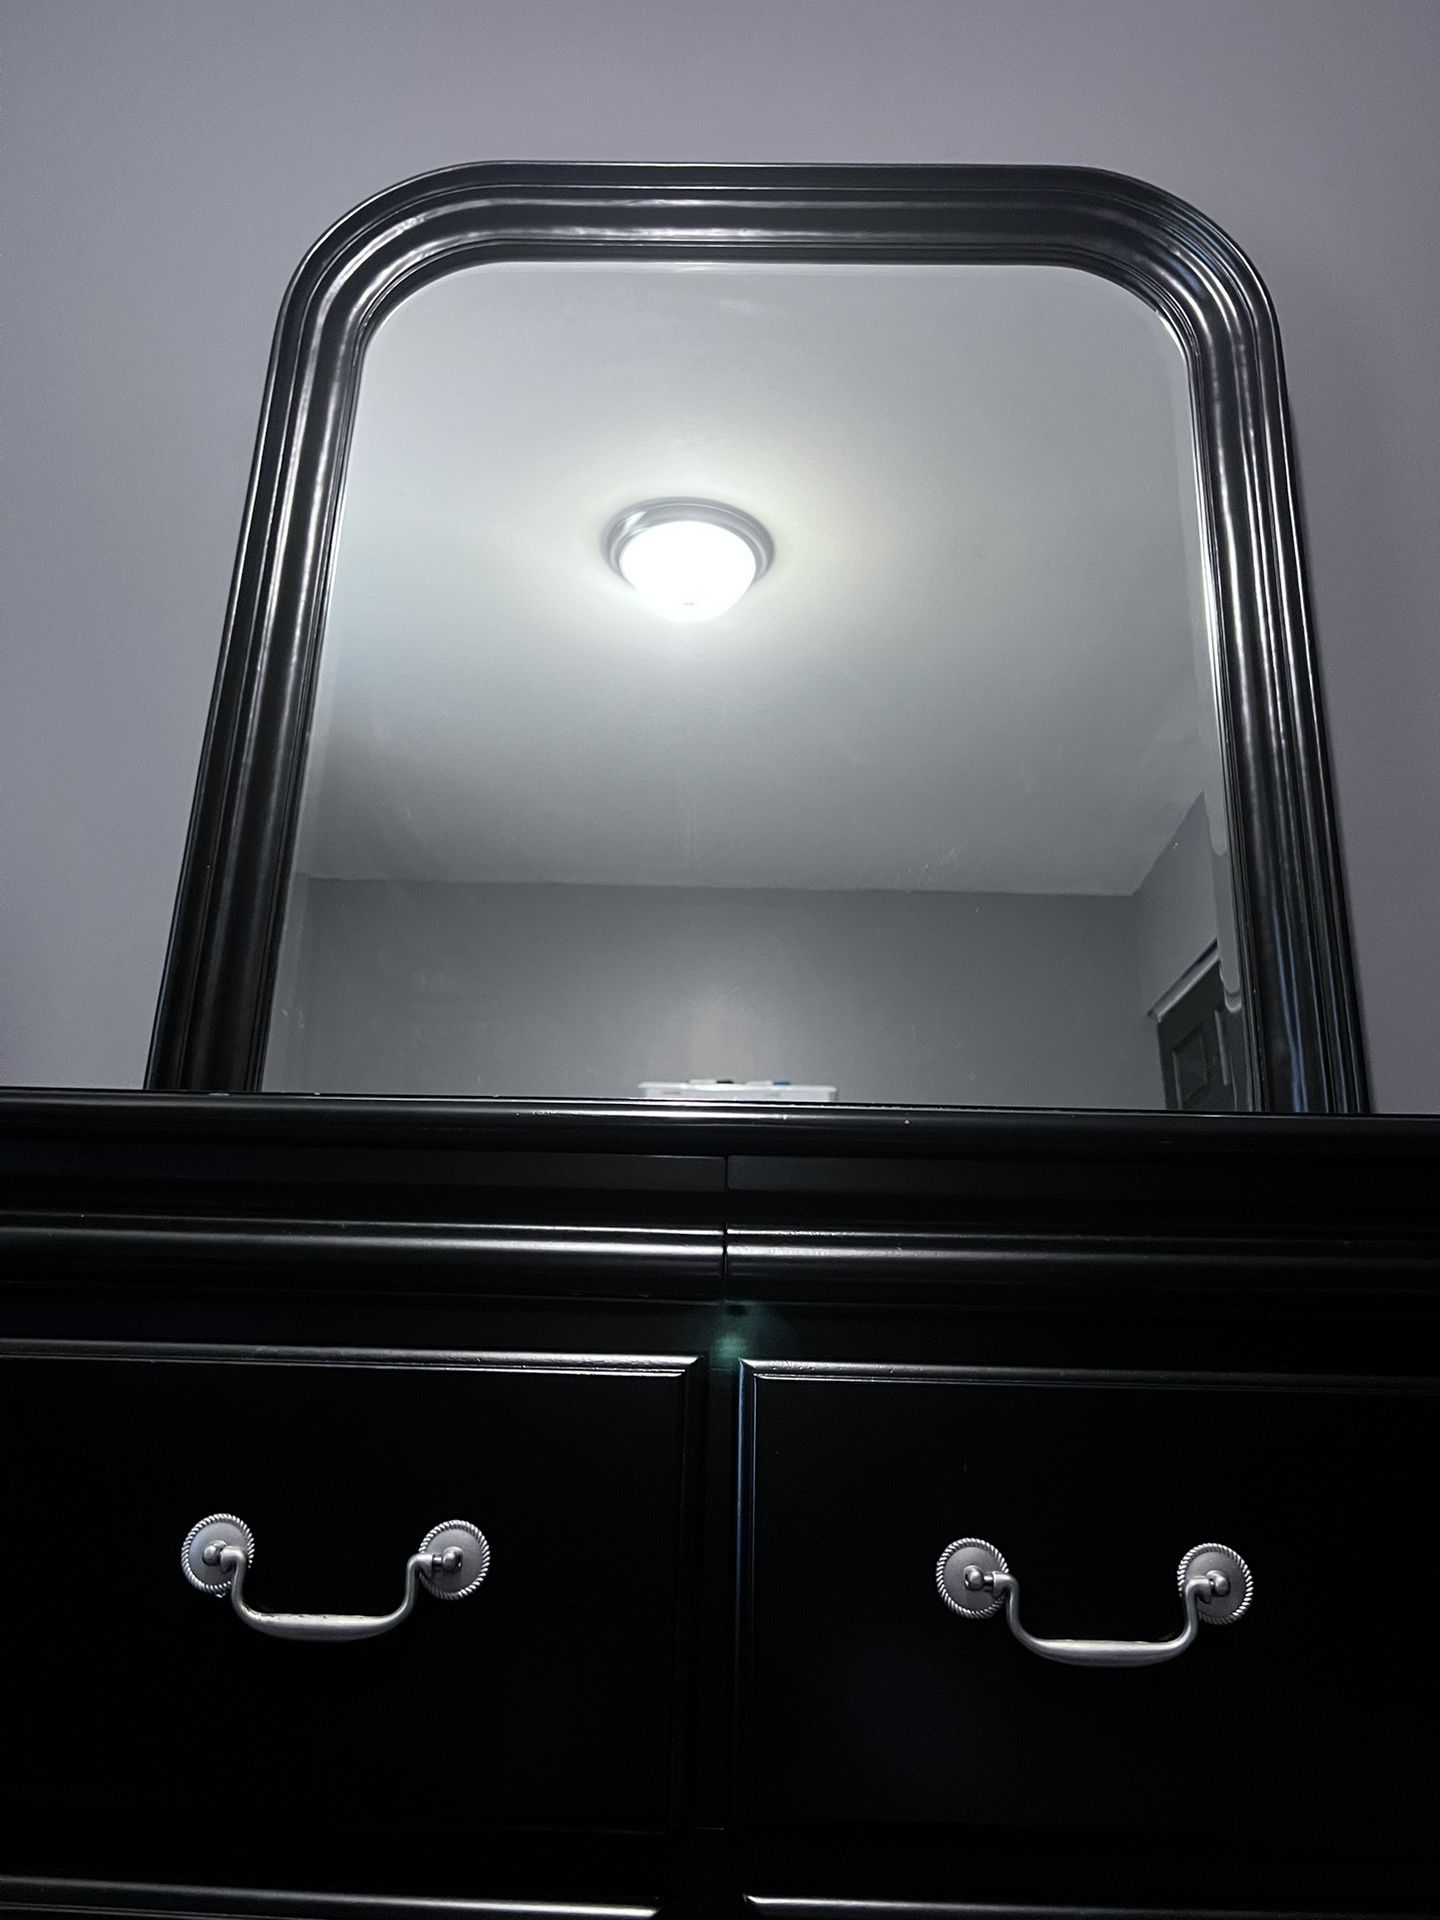 Black 6 Drawer Dresser with Mirror